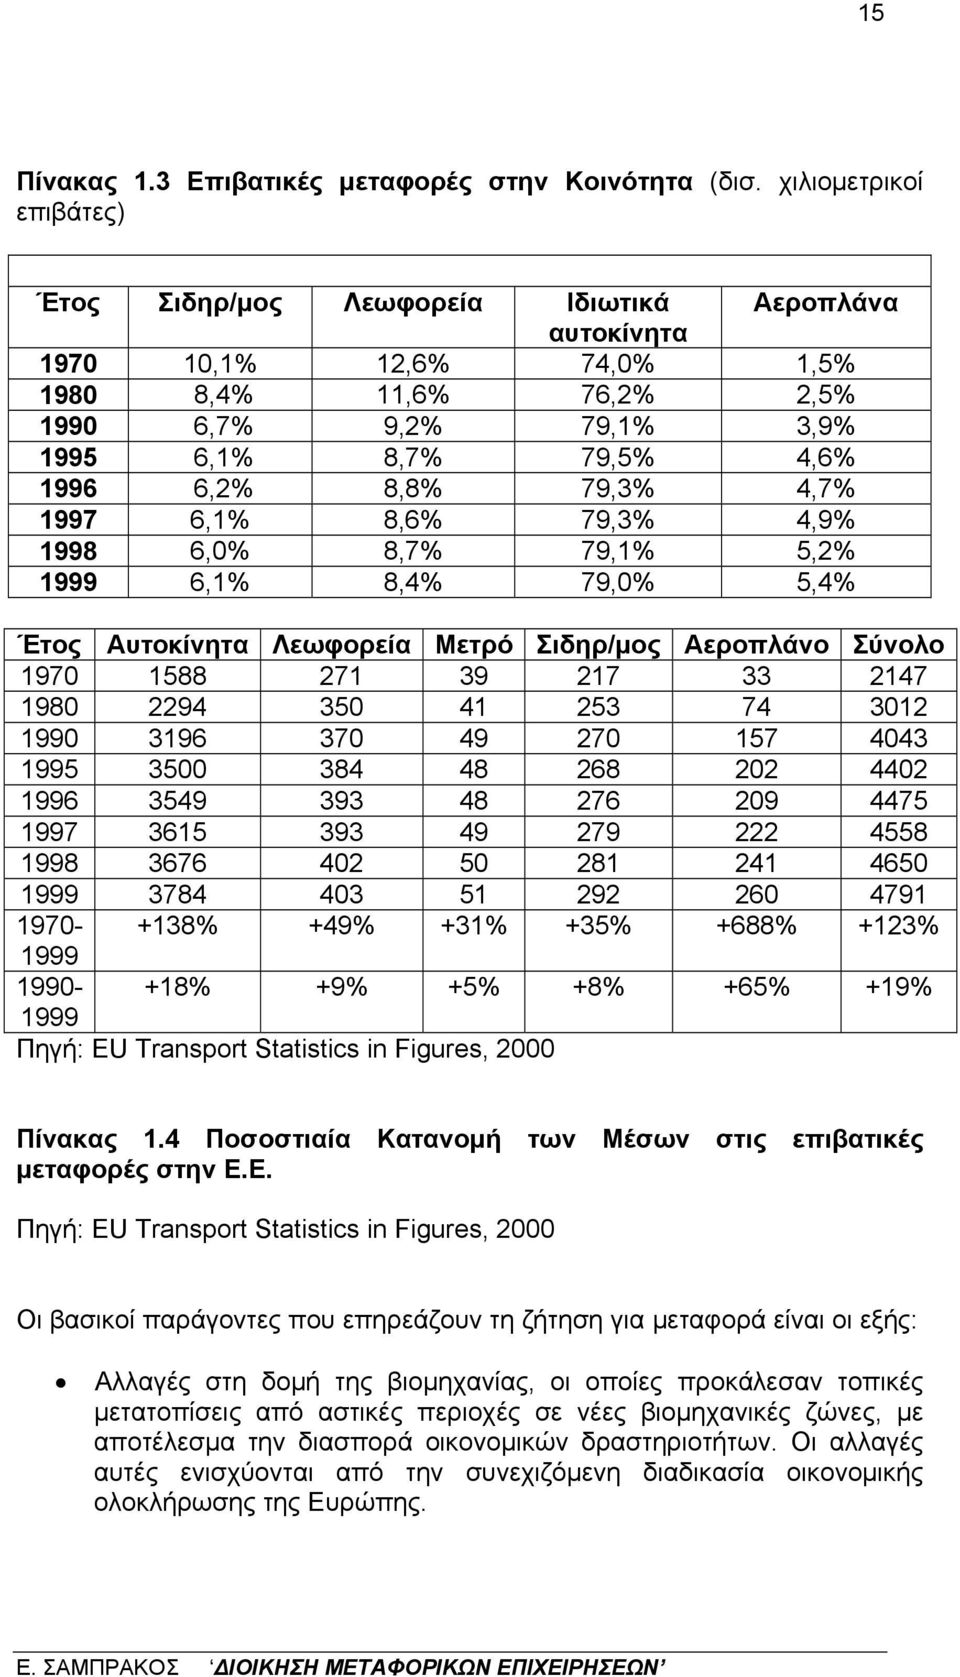 8,8% 79,3% 4,7% 1997 6,1% 8,6% 79,3% 4,9% 1998 6,0% 8,7% 79,1% 5,2% 1999 6,1% 8,4% 79,0% 5,4% Έτος Αυτοκίνητα Λεωφορεία Μετρό Σιδηρ/μος Αεροπλάνο Σύνολο 1970 1588 271 39 217 33 2147 1980 2294 350 41